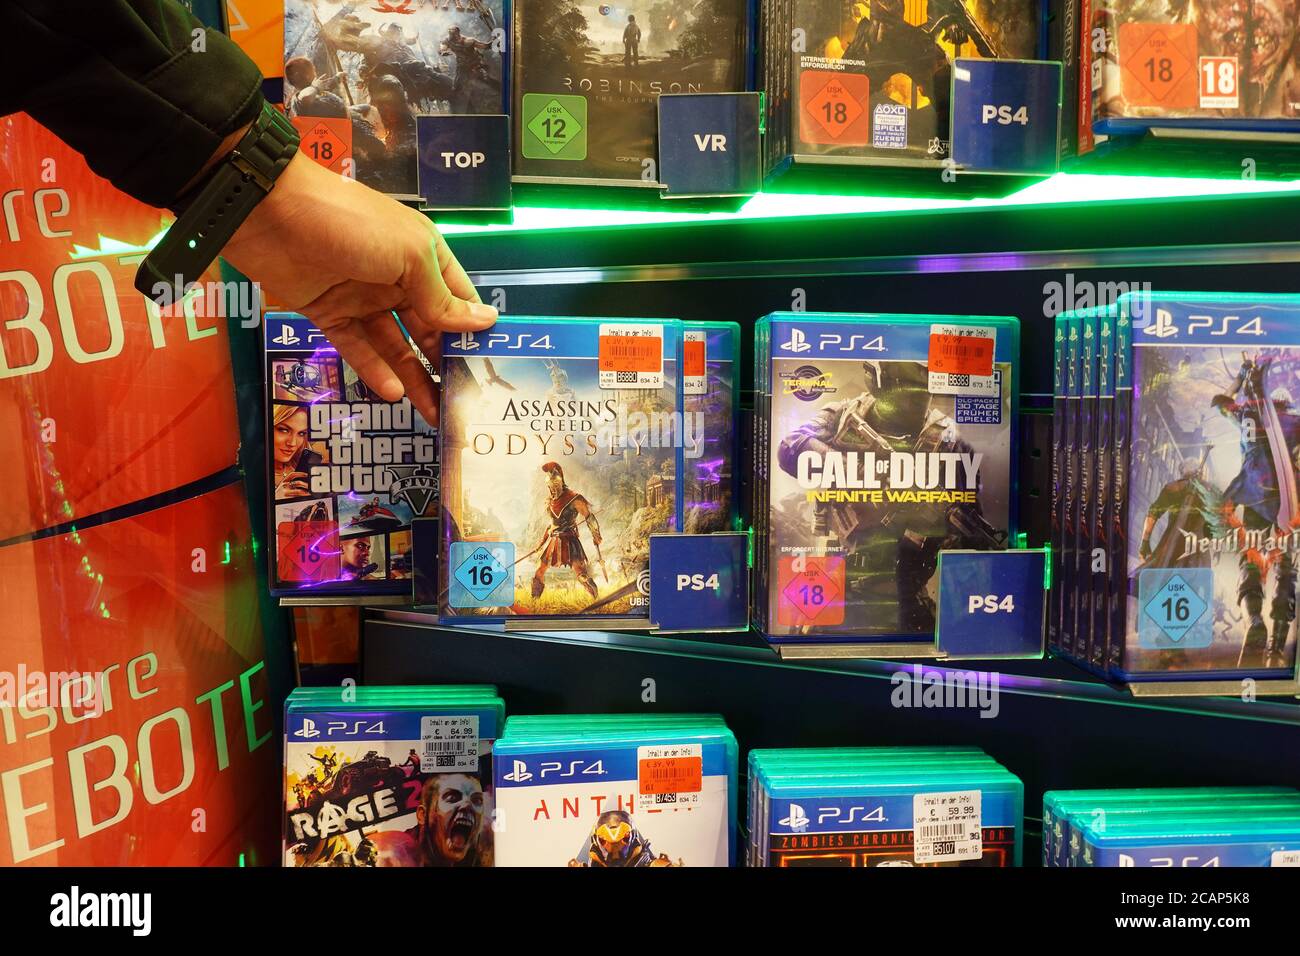 Juego de Assassin's Creed para PS4 en una tienda Foto de stock